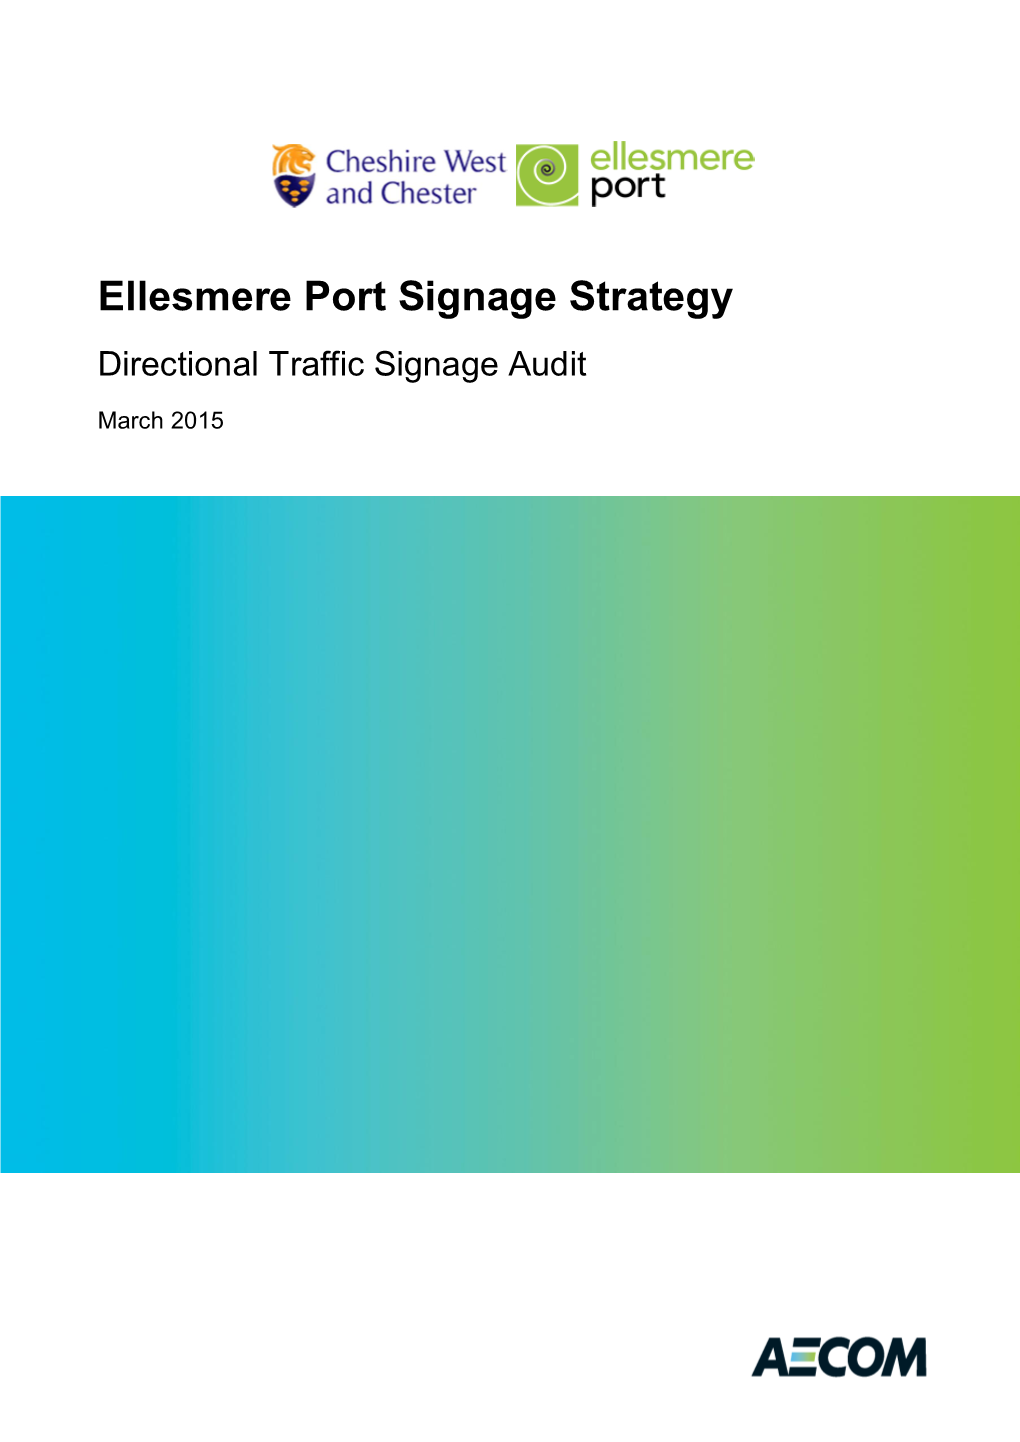 Ellesmere Port Signage Strategy Directional Traffic Signage Audit